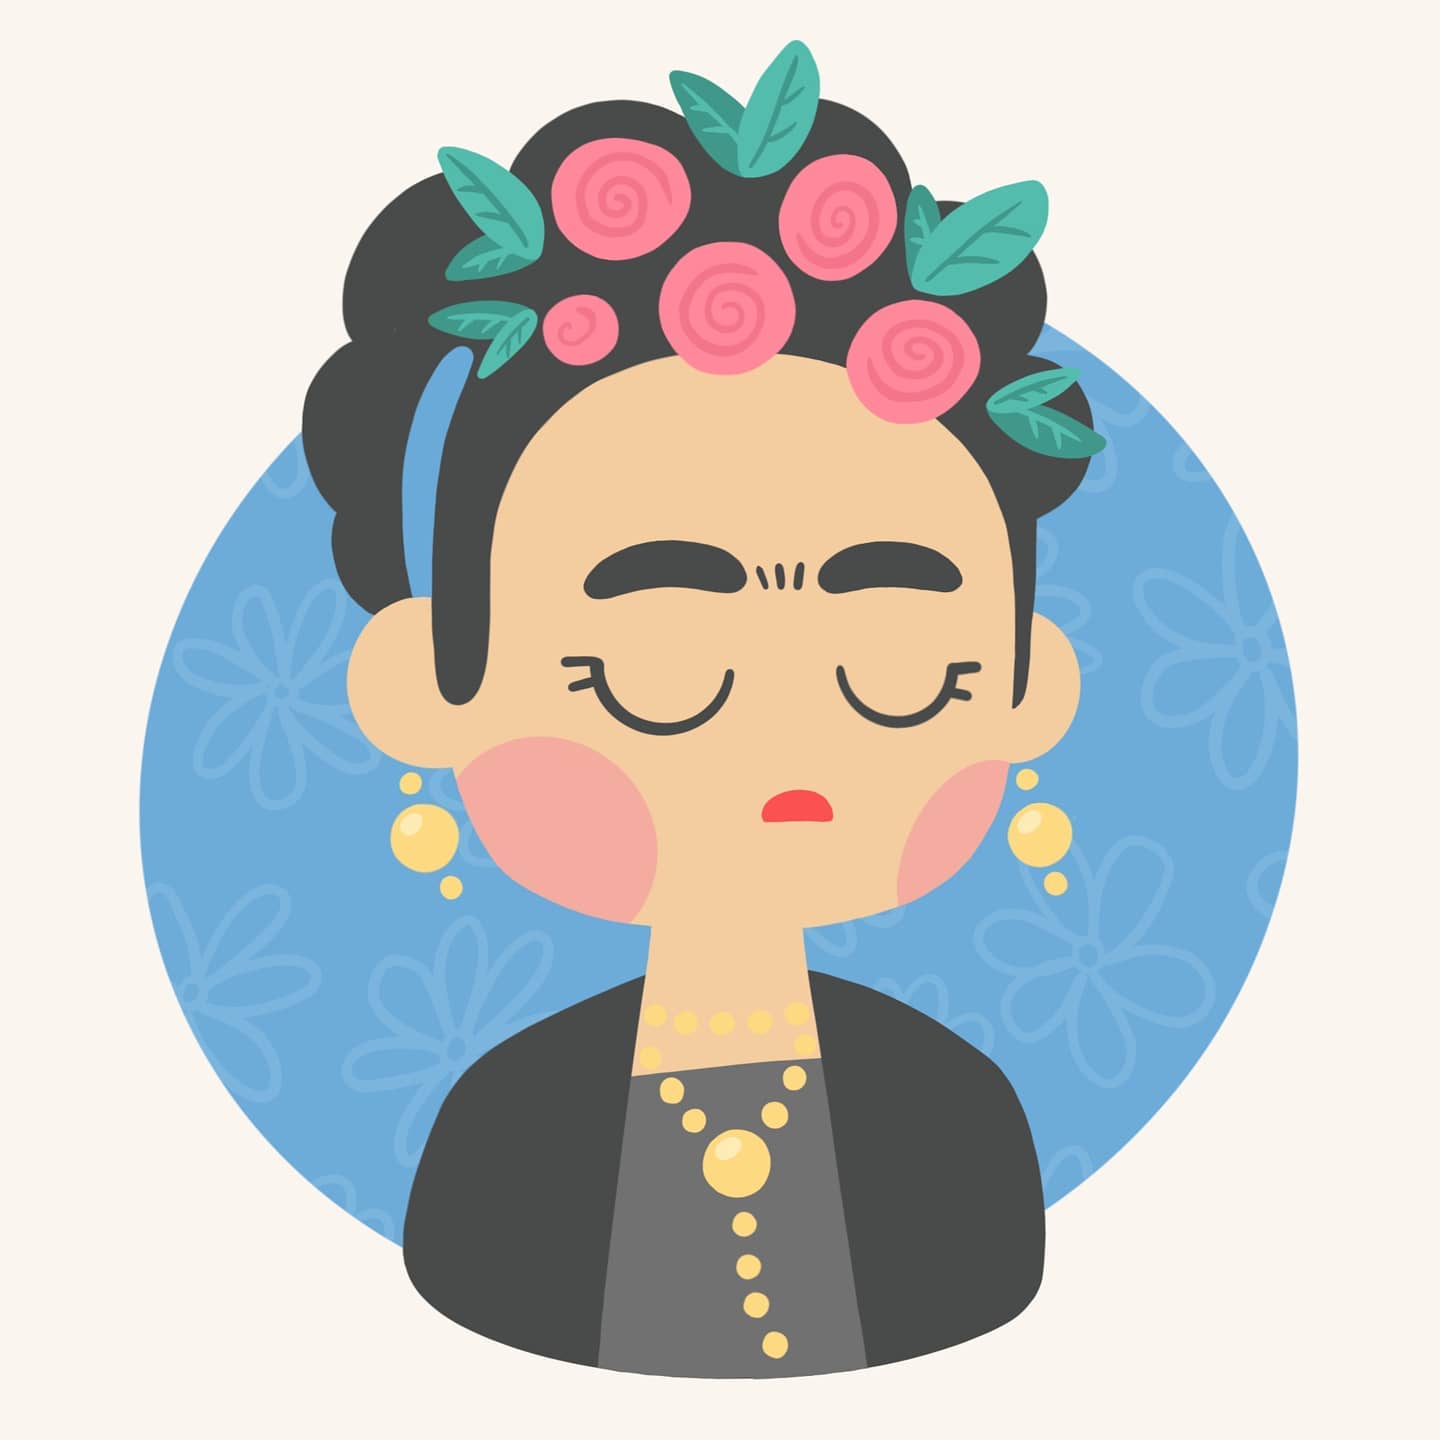 Digital, stylised portrait of Frida Kahlo